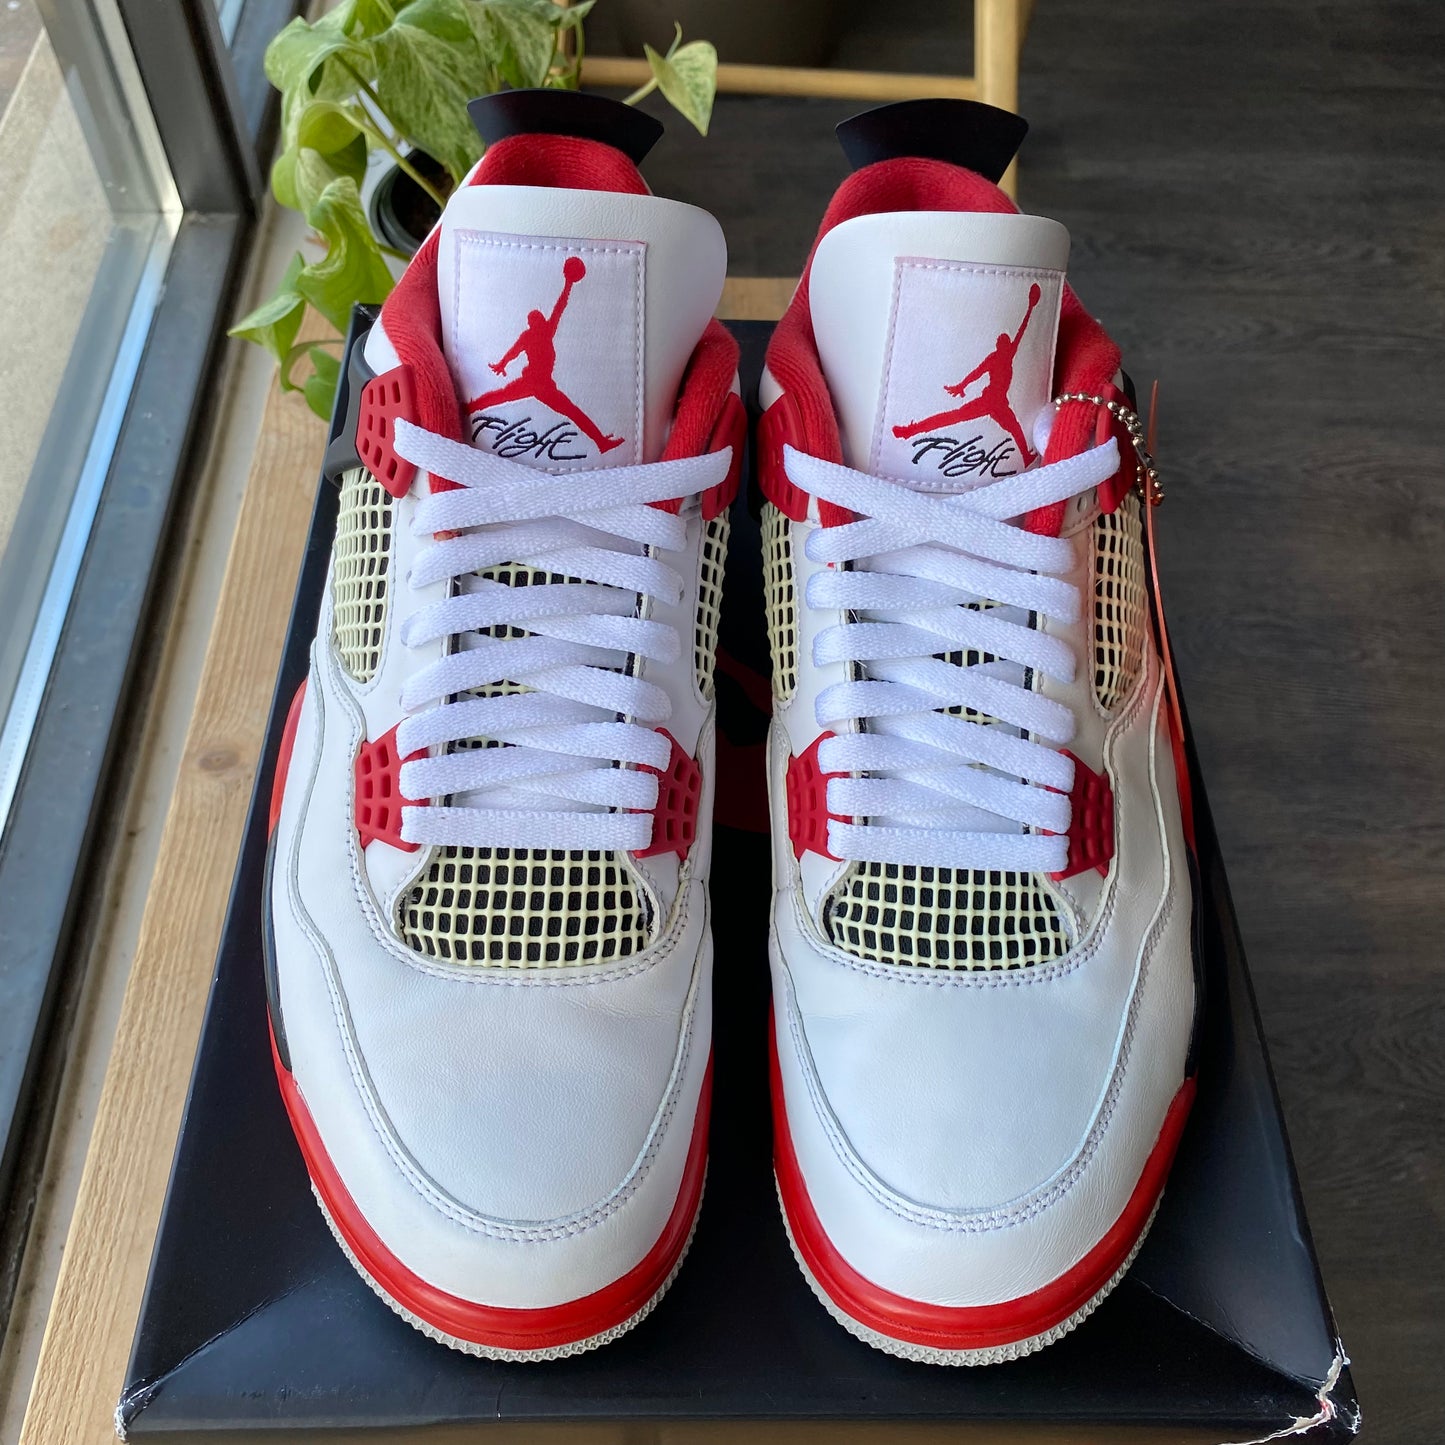 Air Jordan 4 "Fire Red" Size 9.5